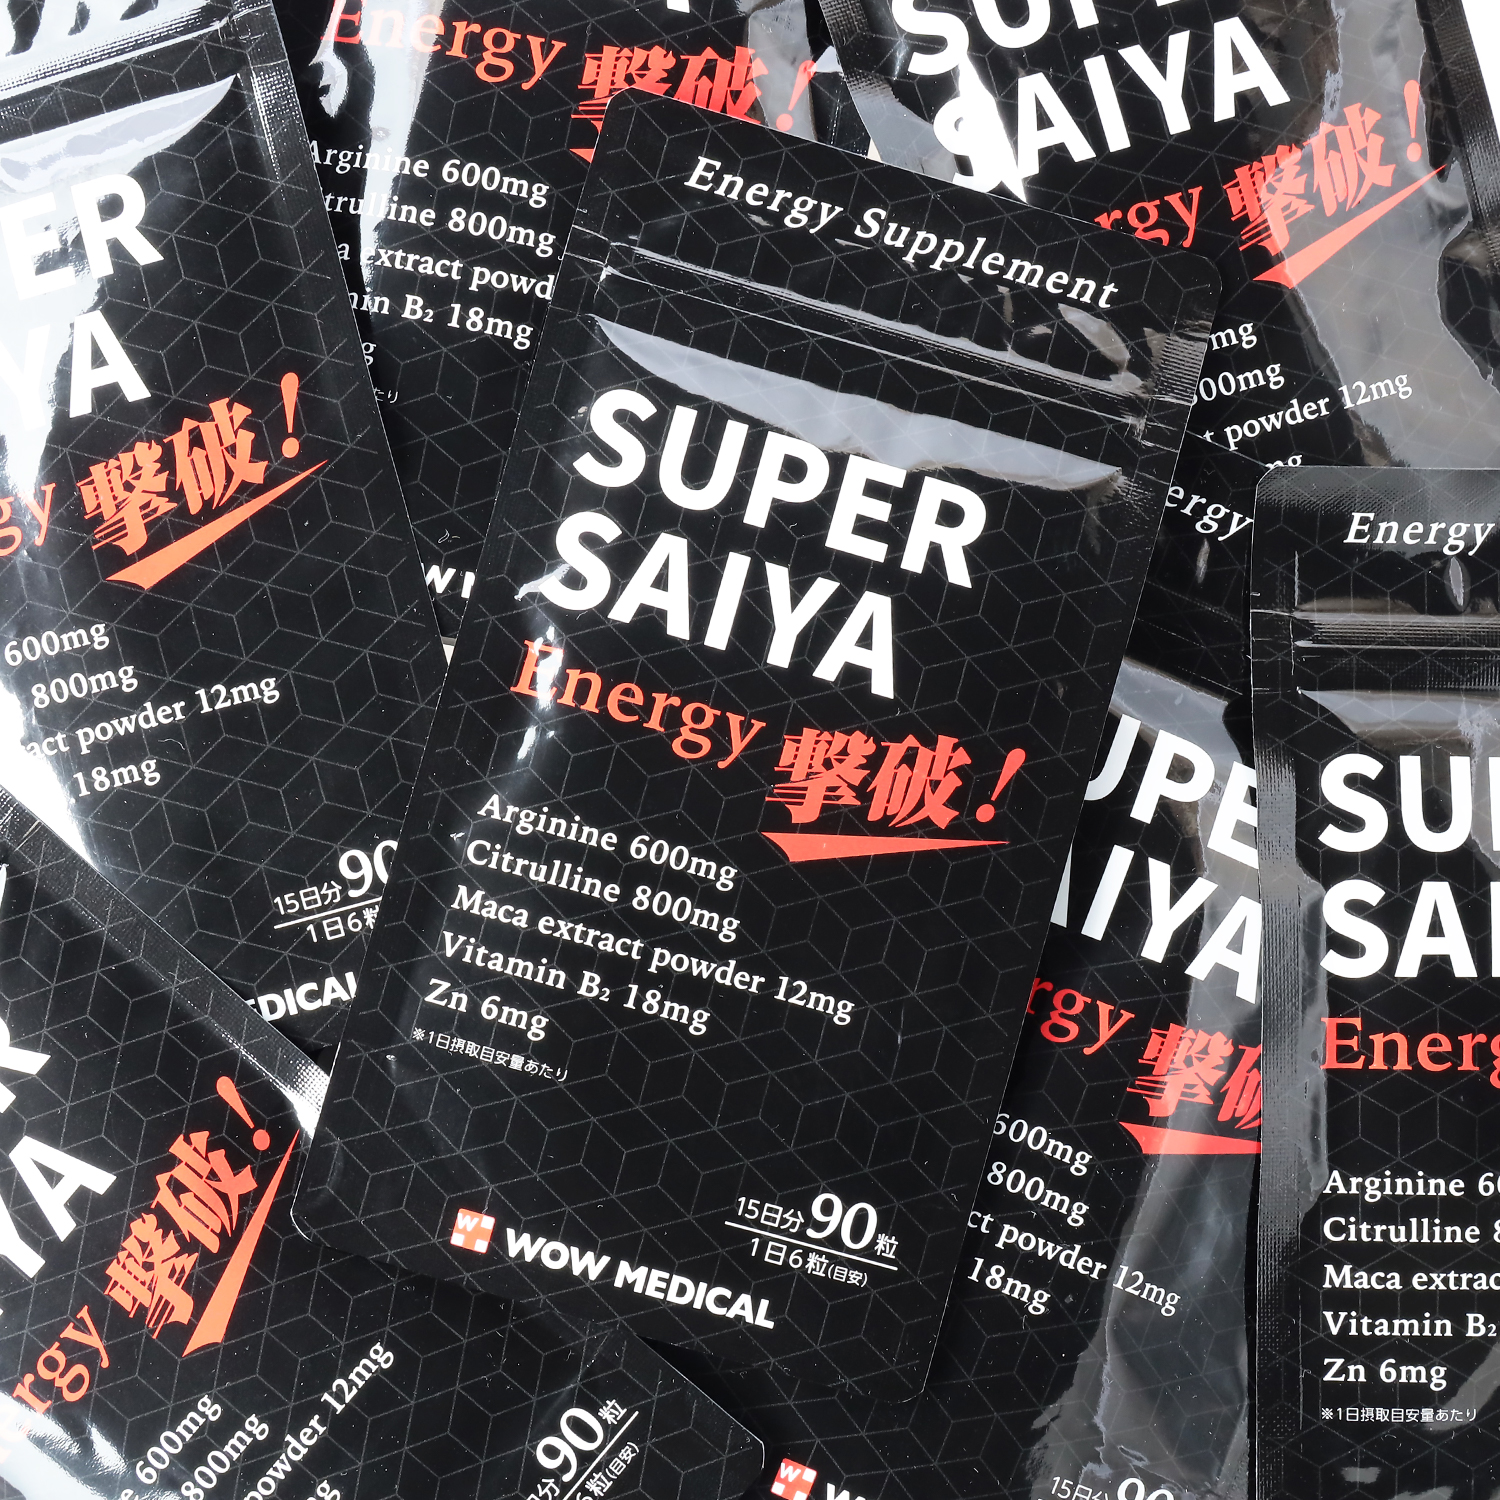 新商品 日本発 40 50代男性のためのエナジーサプリメント Super Saiya エナジー撃破 Amazonにて限定発売 Wow Medical株式会社のプレスリリース